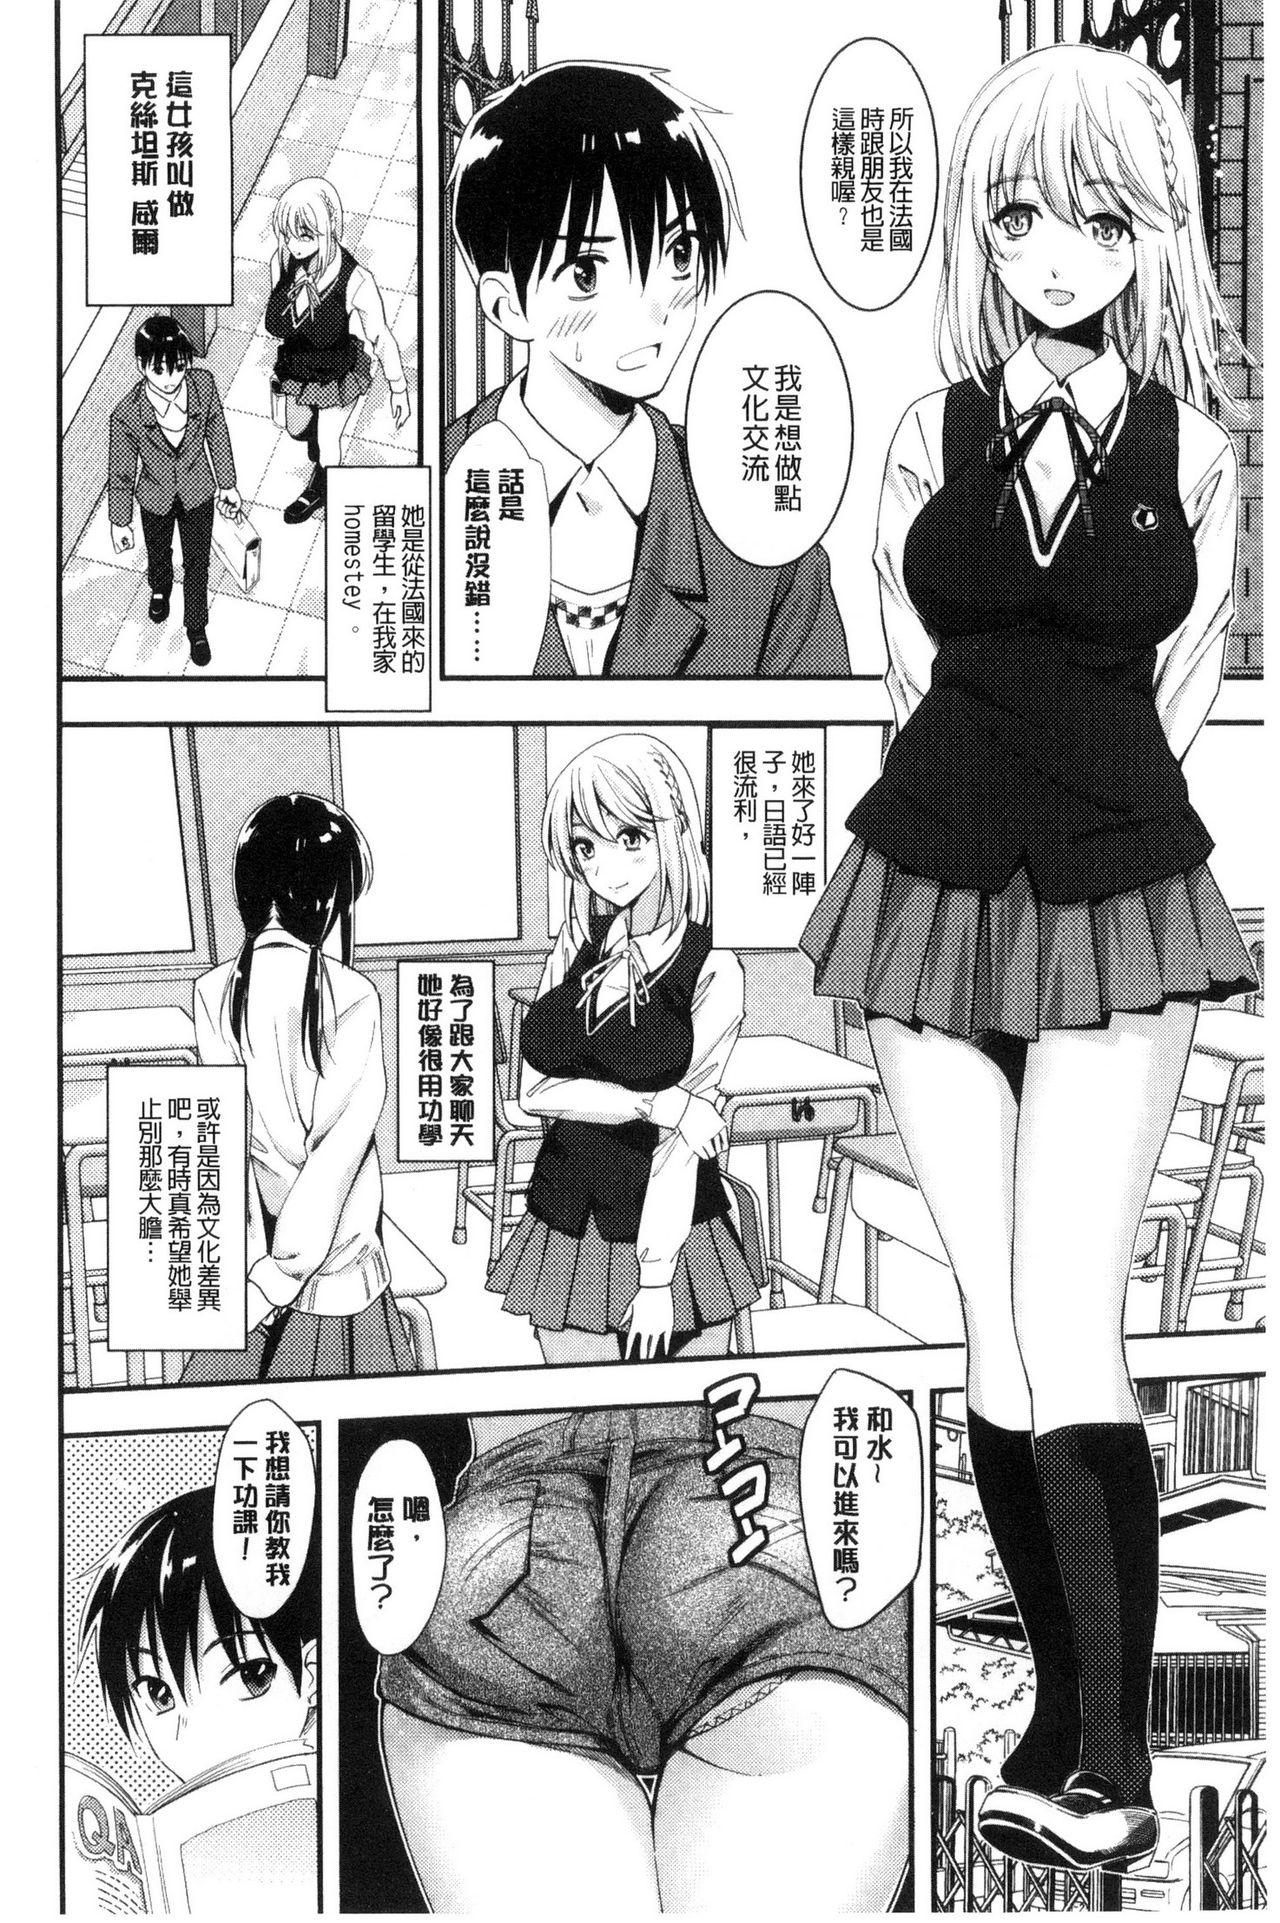 Seifuku no Mama Aishinasai! - Love in school uniform 127